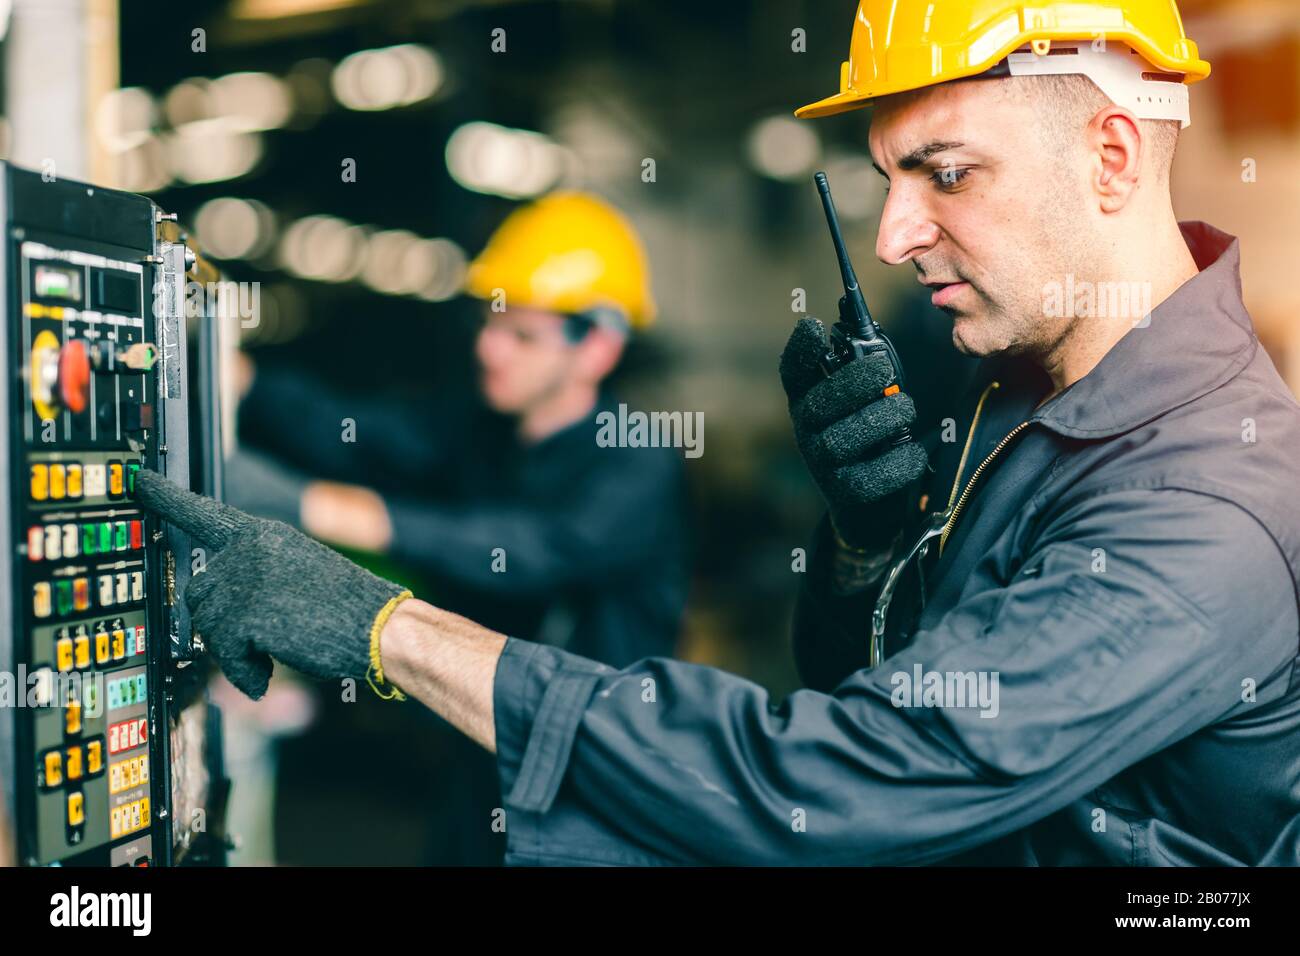 Professioneller Arbeiter-Techniker überwacht an der Maschinensteuertafel und Radio Kommunikation mit dem Kollegen während des Druckens der Taste. Stockfoto